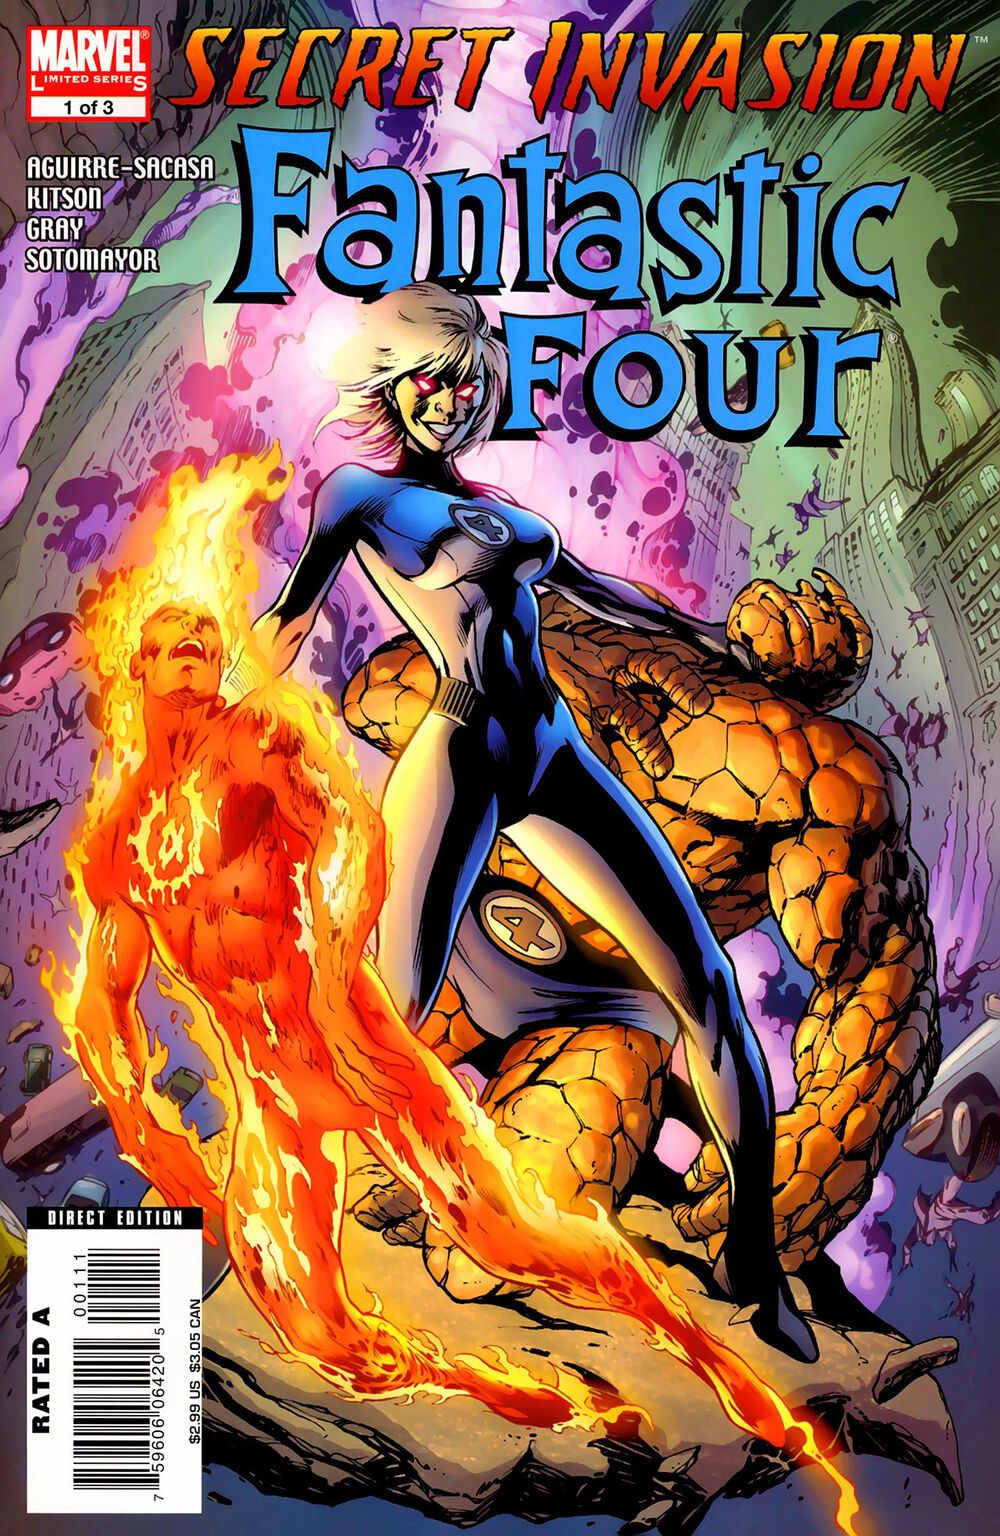 Secret Invasion: Fantastic Four Limited Series Bundle Issues 1-3